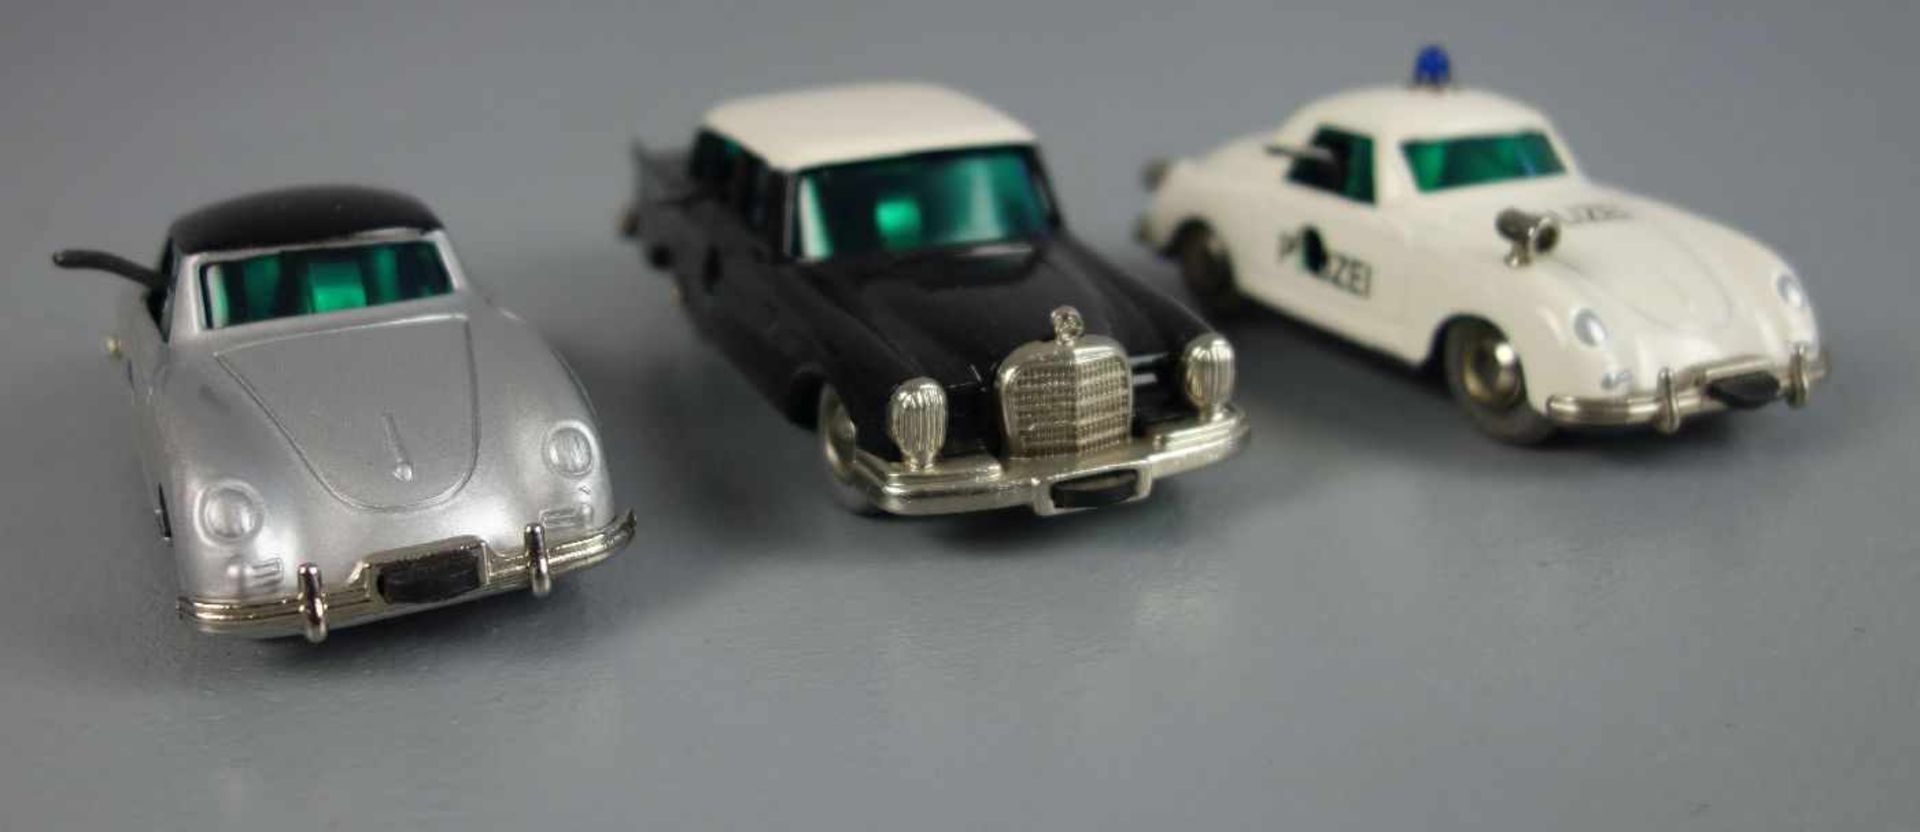 BLECHSPIELZEUGE / FAHRZEUGE: 3 SCHUCO Micro Racer Autos / tin toy cars, Mitte 20. Jh., Manufaktur - Bild 2 aus 4